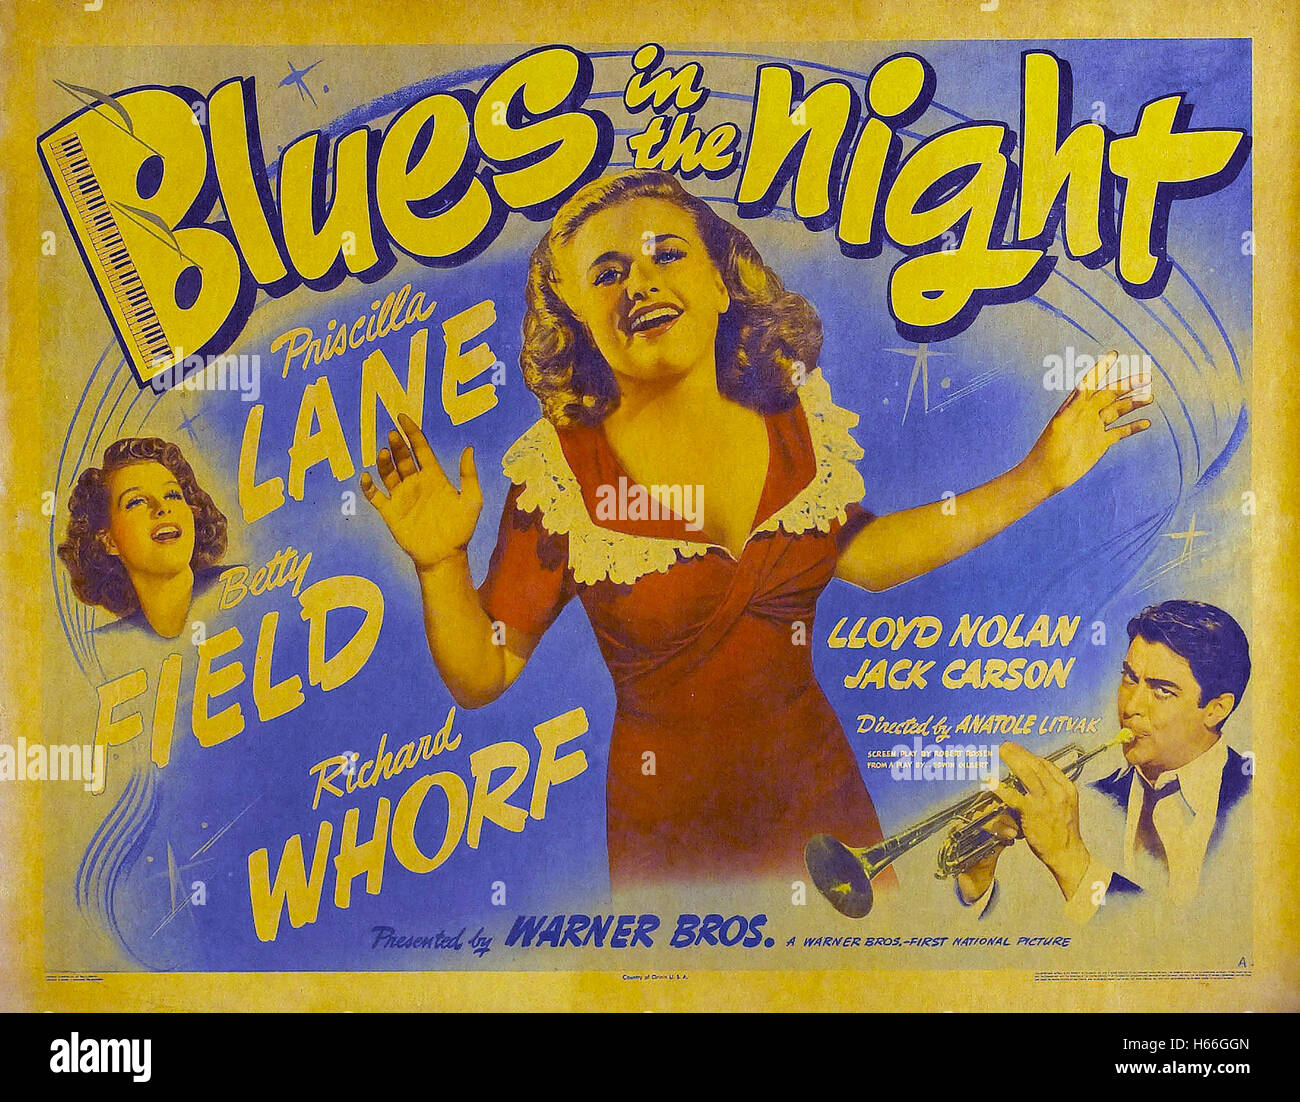 Blues nella notte - Poster - Foto Stock